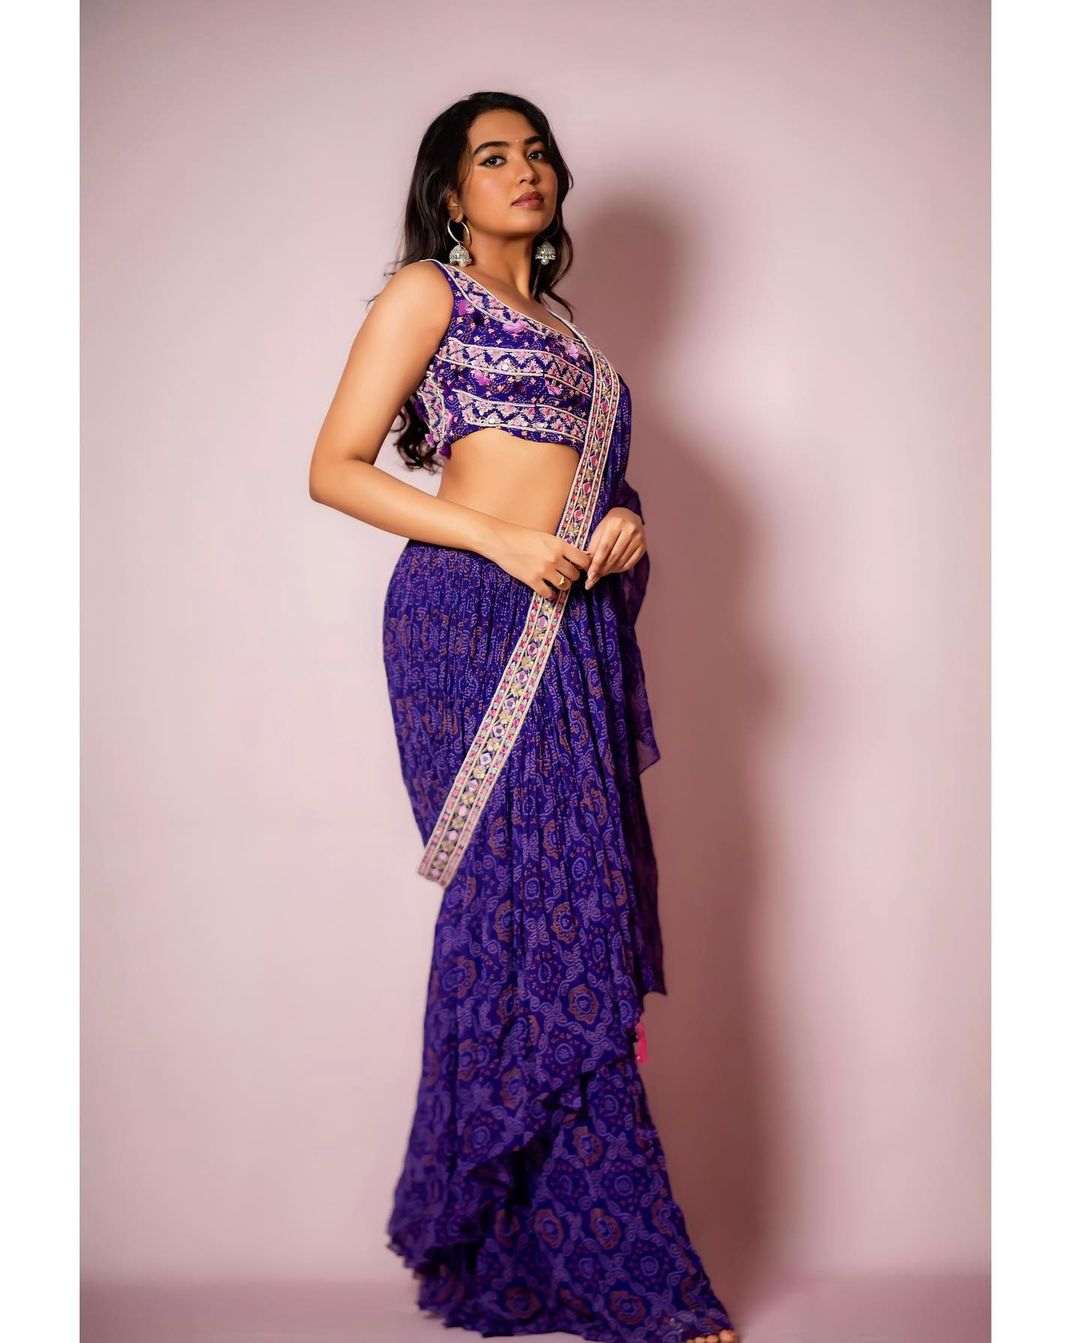 Shivathmika latest photoshoot in blue half saree 